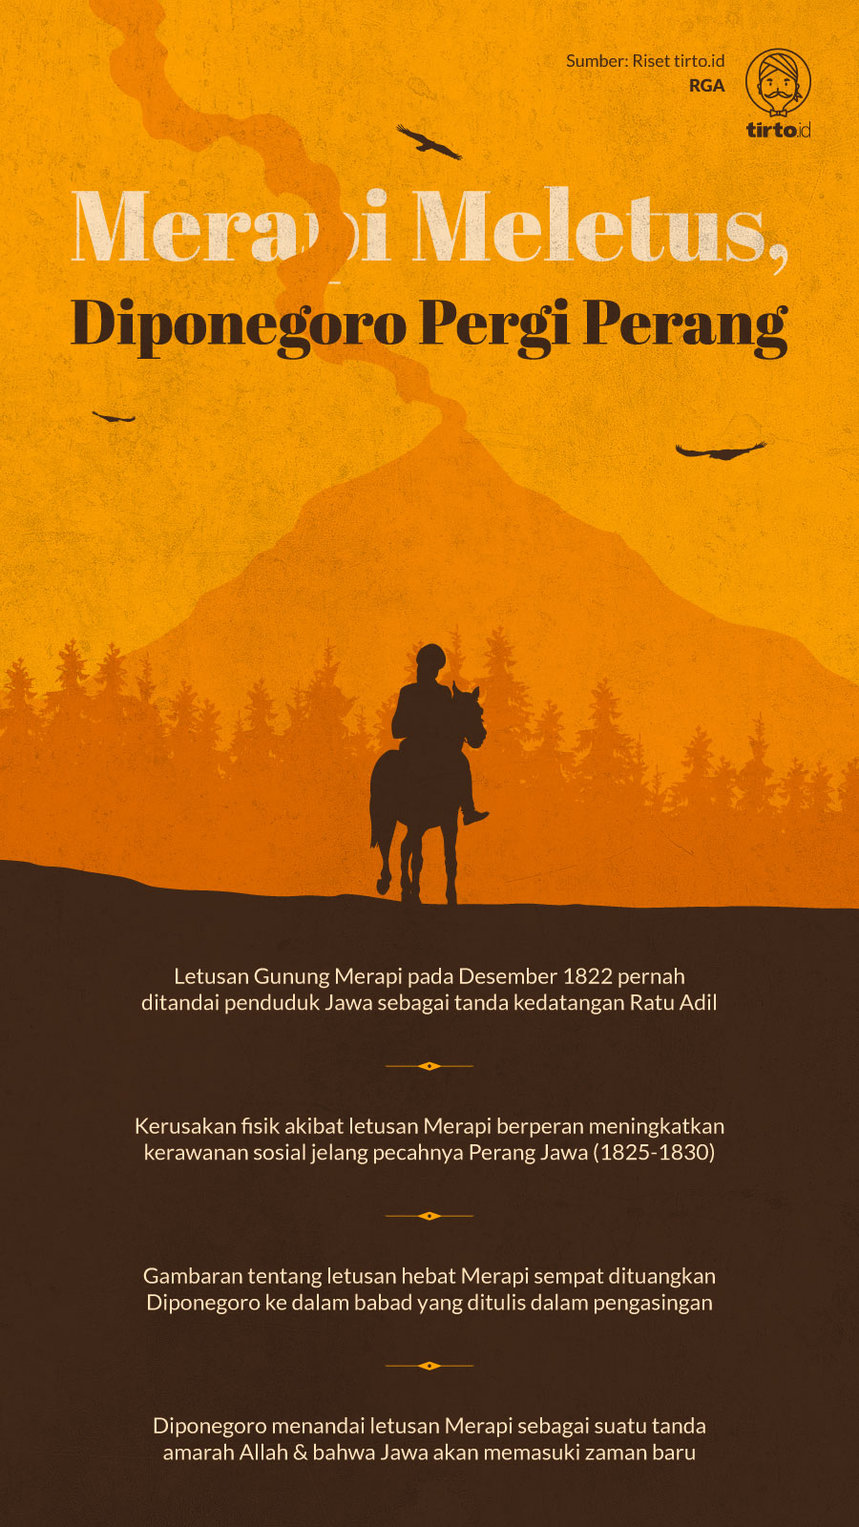 Infografik Merapi Meletus Diponegoro Pergi Perang